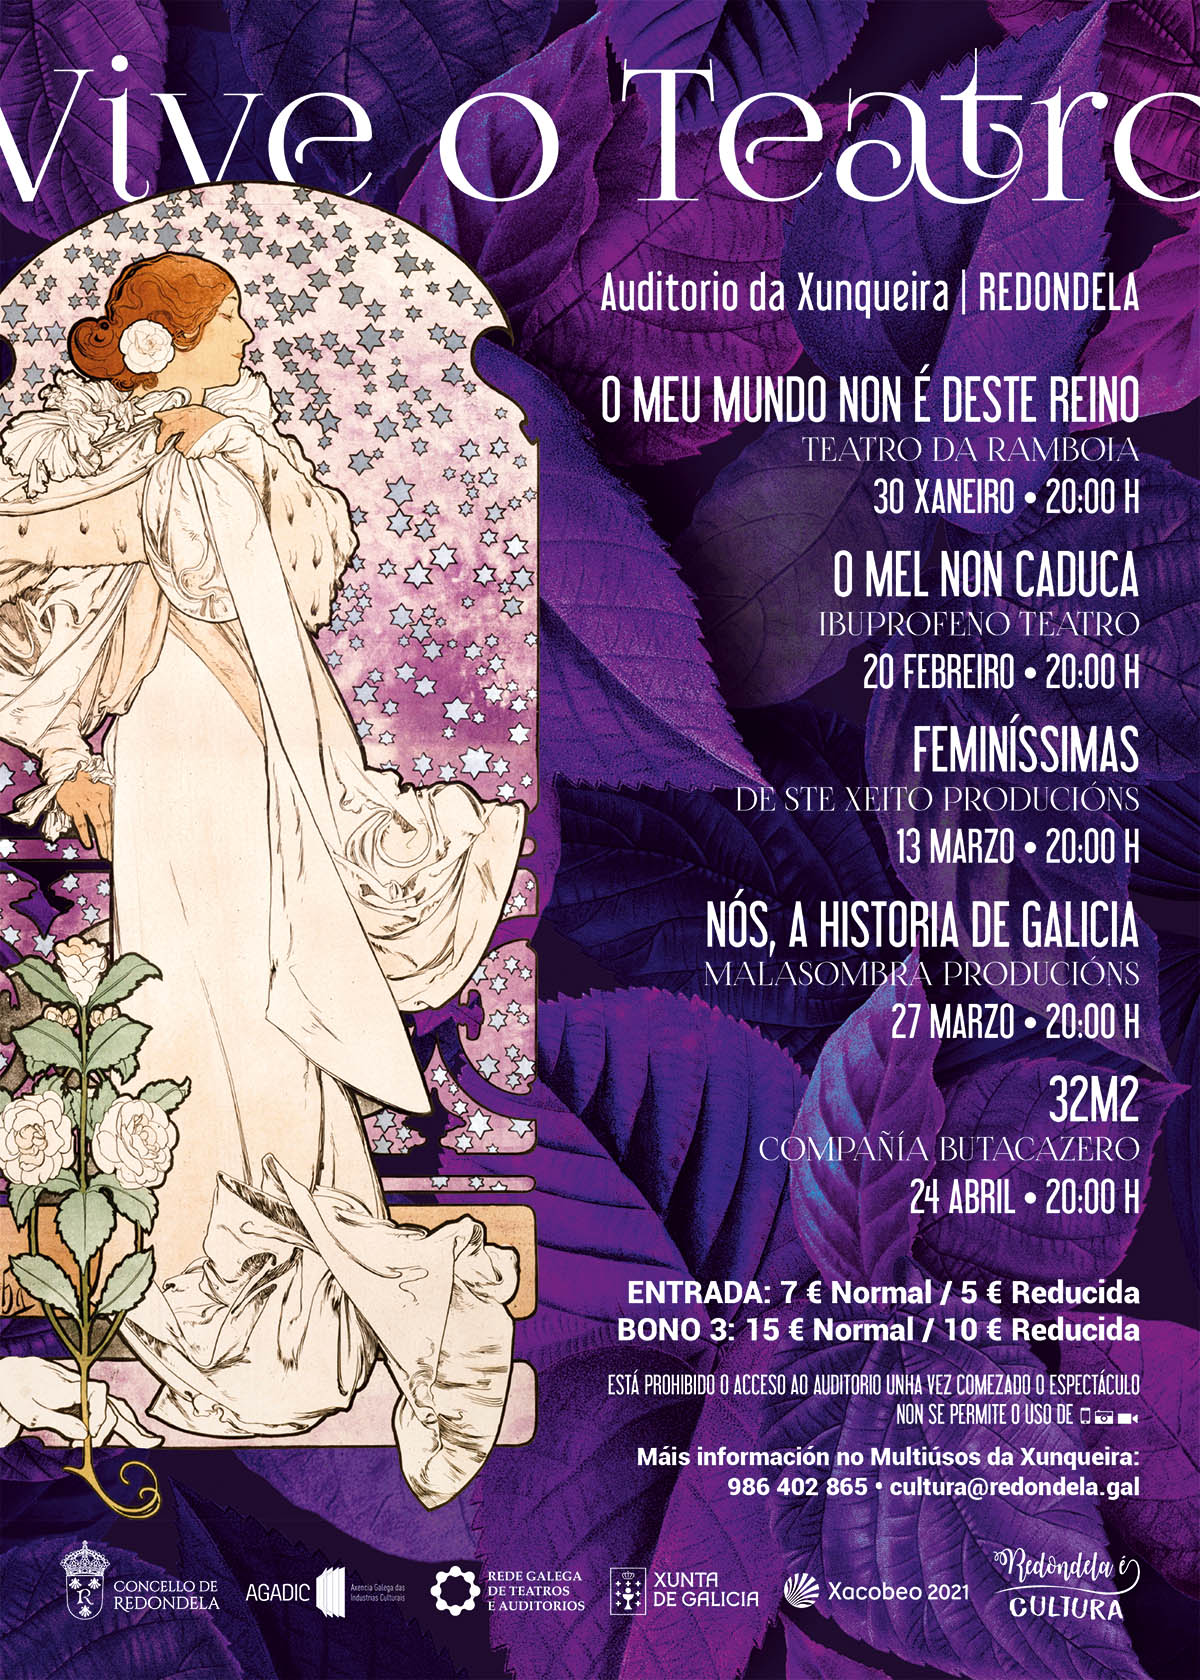 Campaña Ciclo Teatro Redondela Pontevedra Diseño Publicidad Marketing Evento cartel 2020 cultura